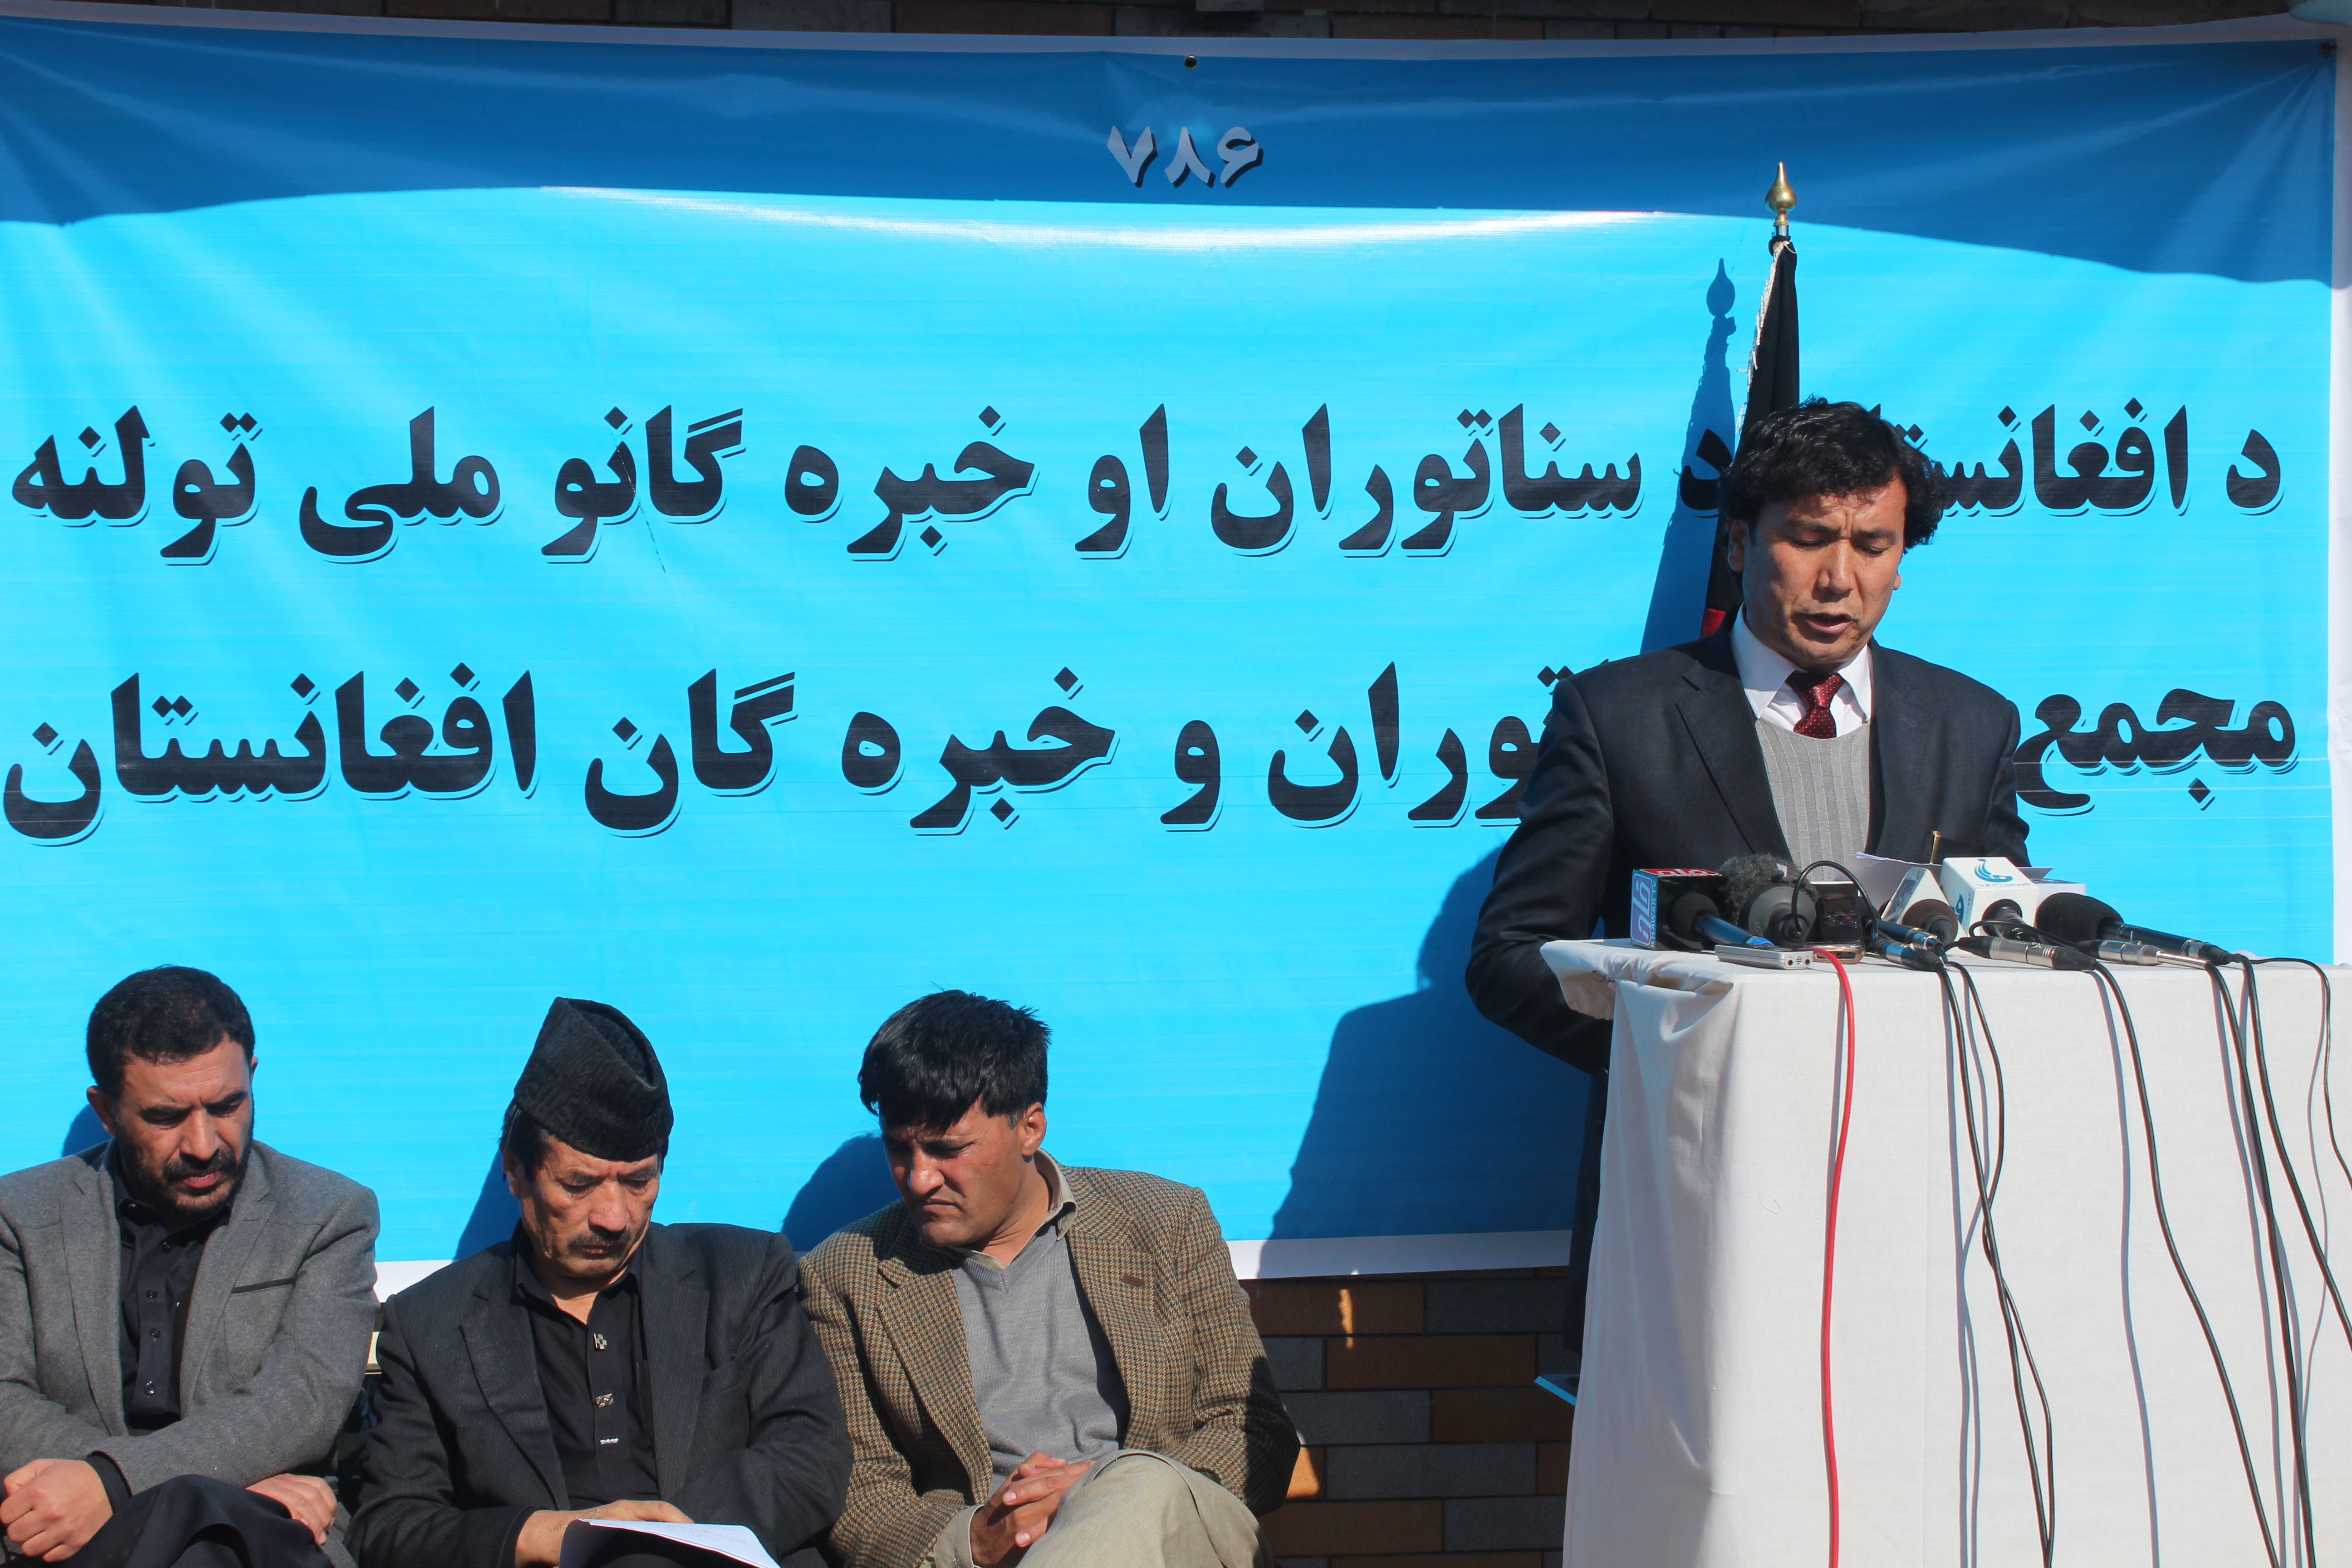 مجمع ملی سناتوران و خبره گان افغانستان اعلام موجودیت کرد